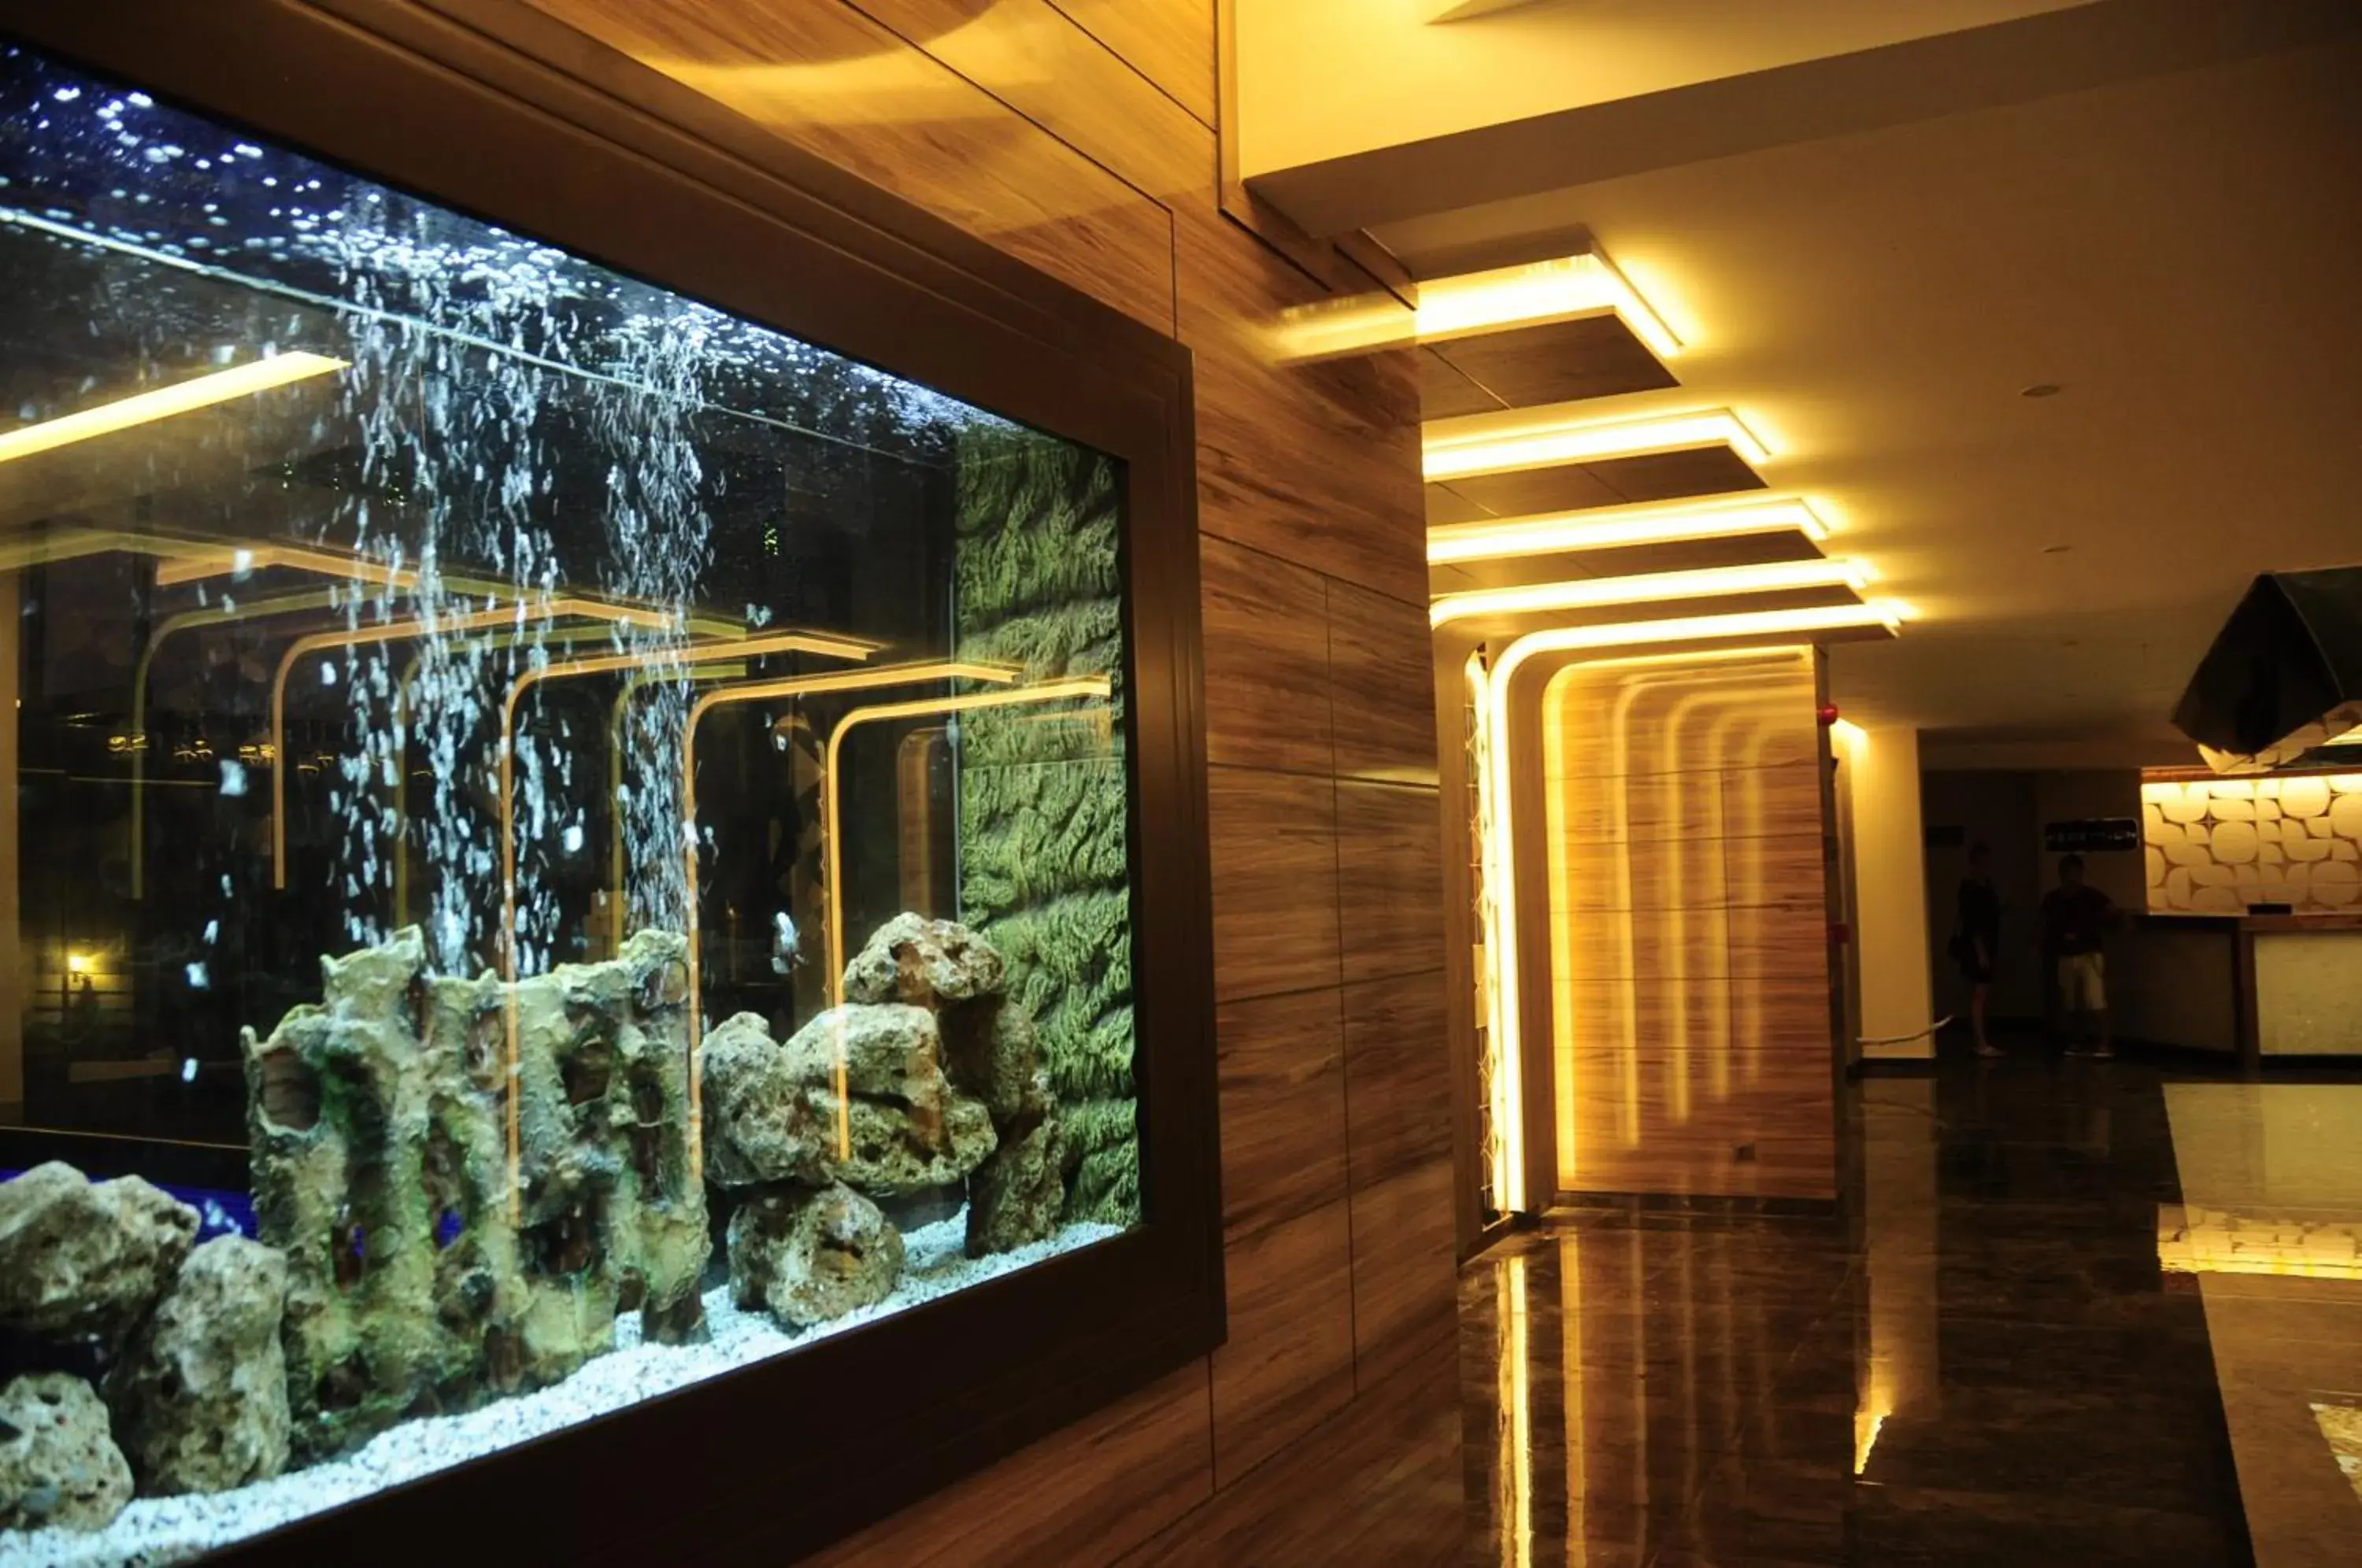 Lobby or reception in Ozgur Bey Spa Hotel